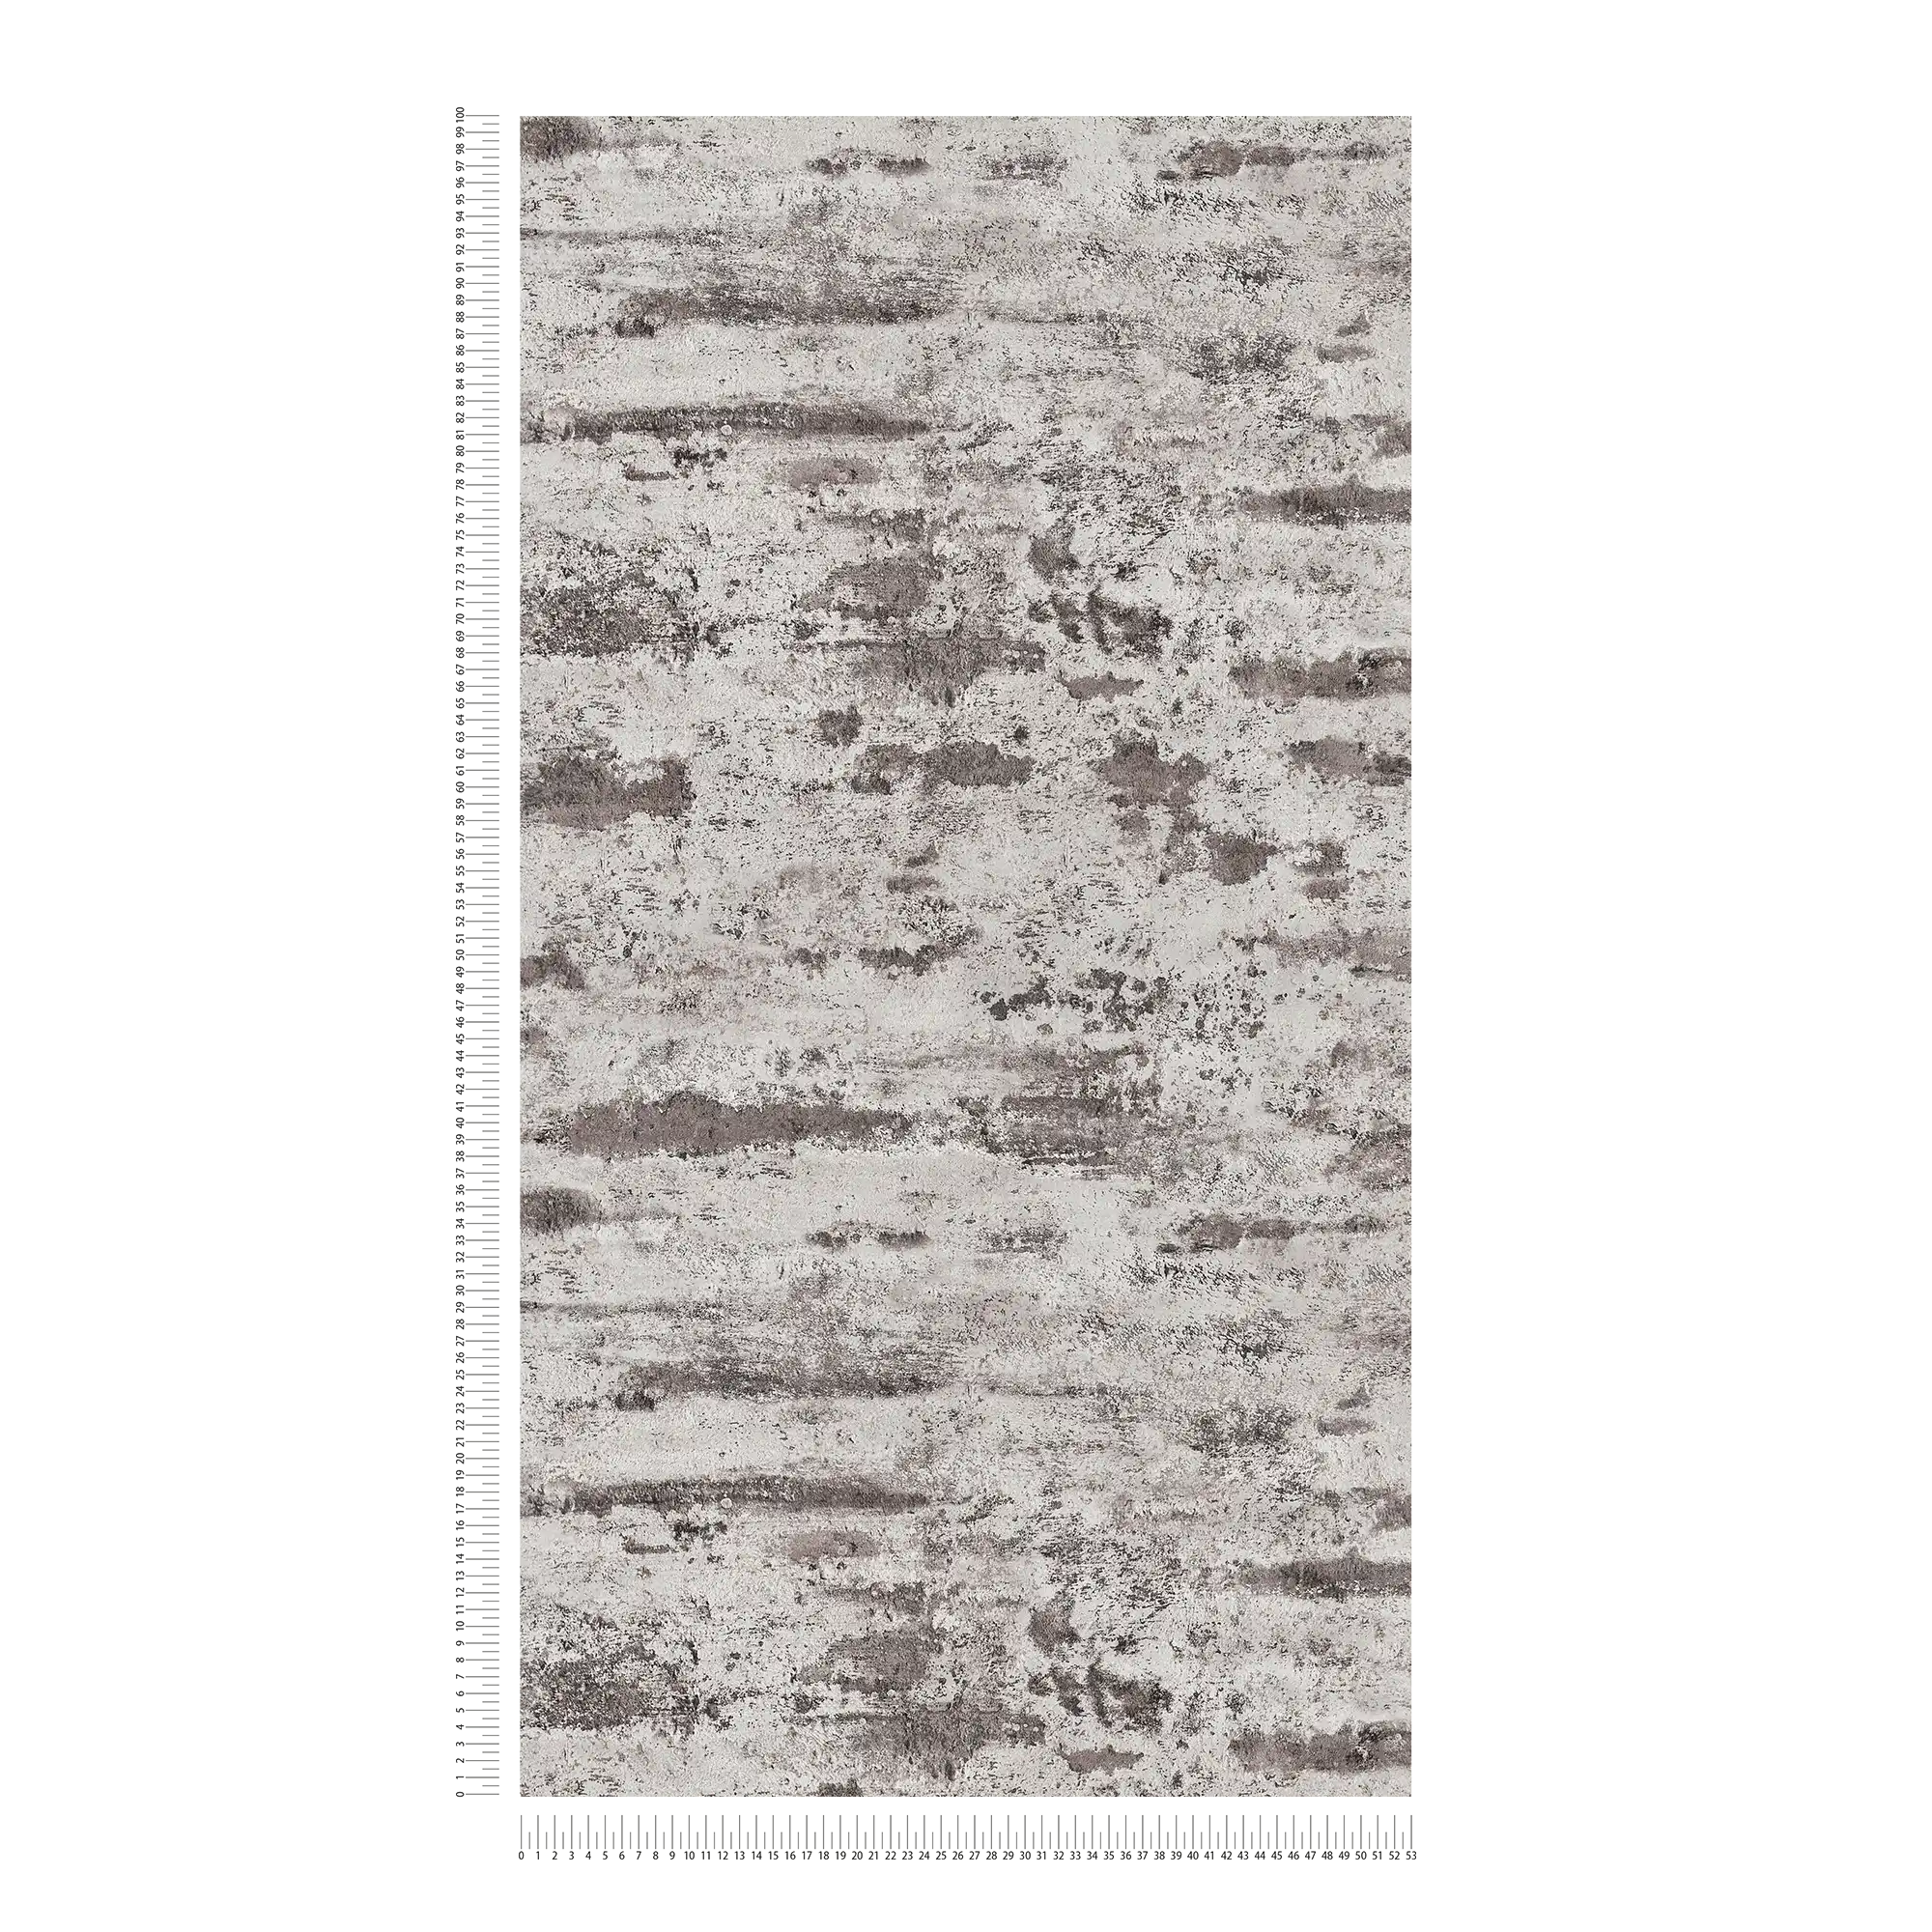             Papel pintado no tejido de aspecto rústico, aspecto de yeso - gris, negro
        